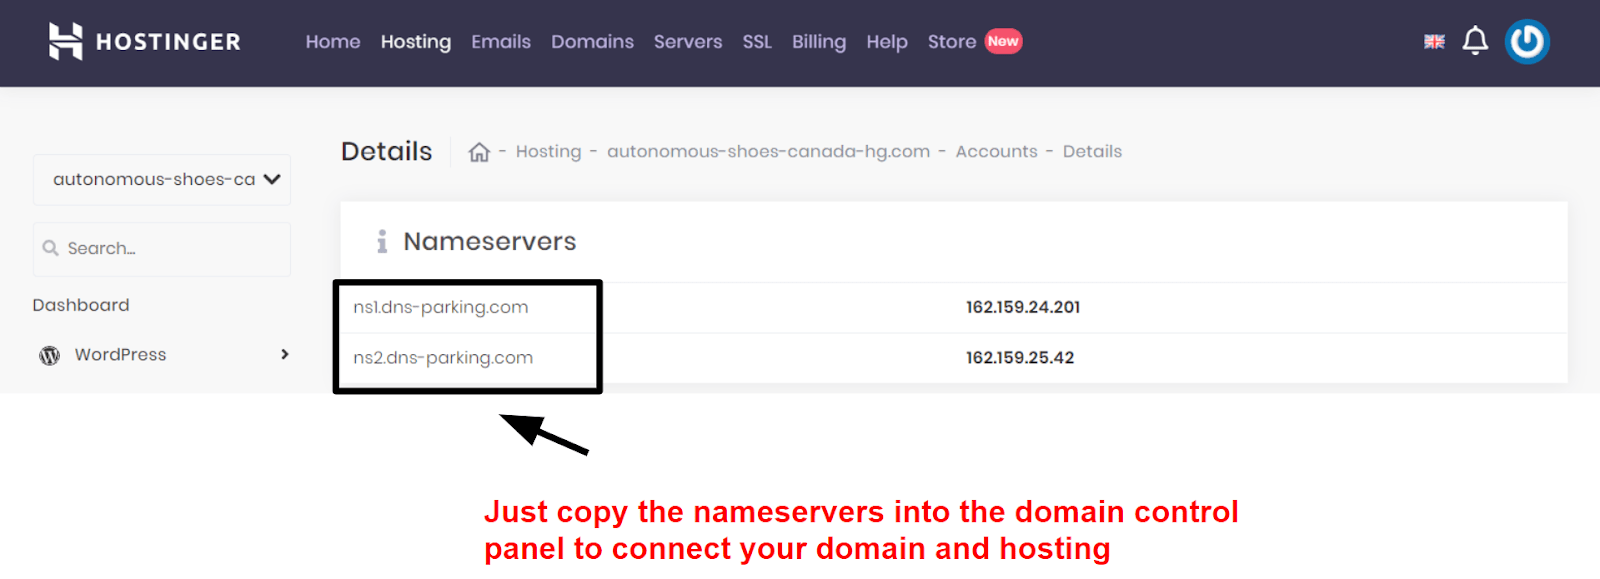 Hostinger domain connection information